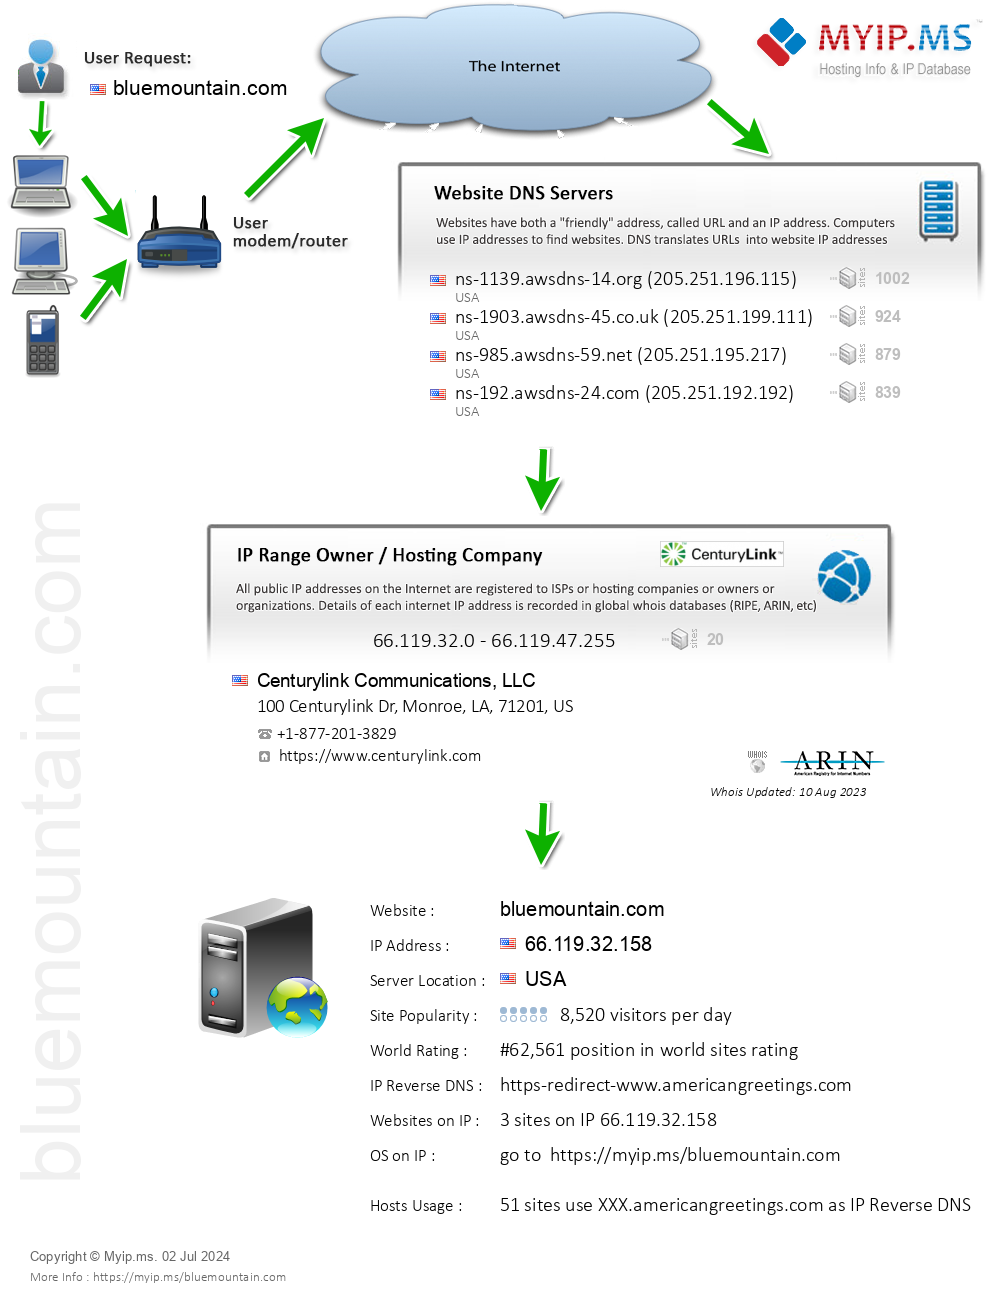 Bluemountain.com - Website Hosting Visual IP Diagram